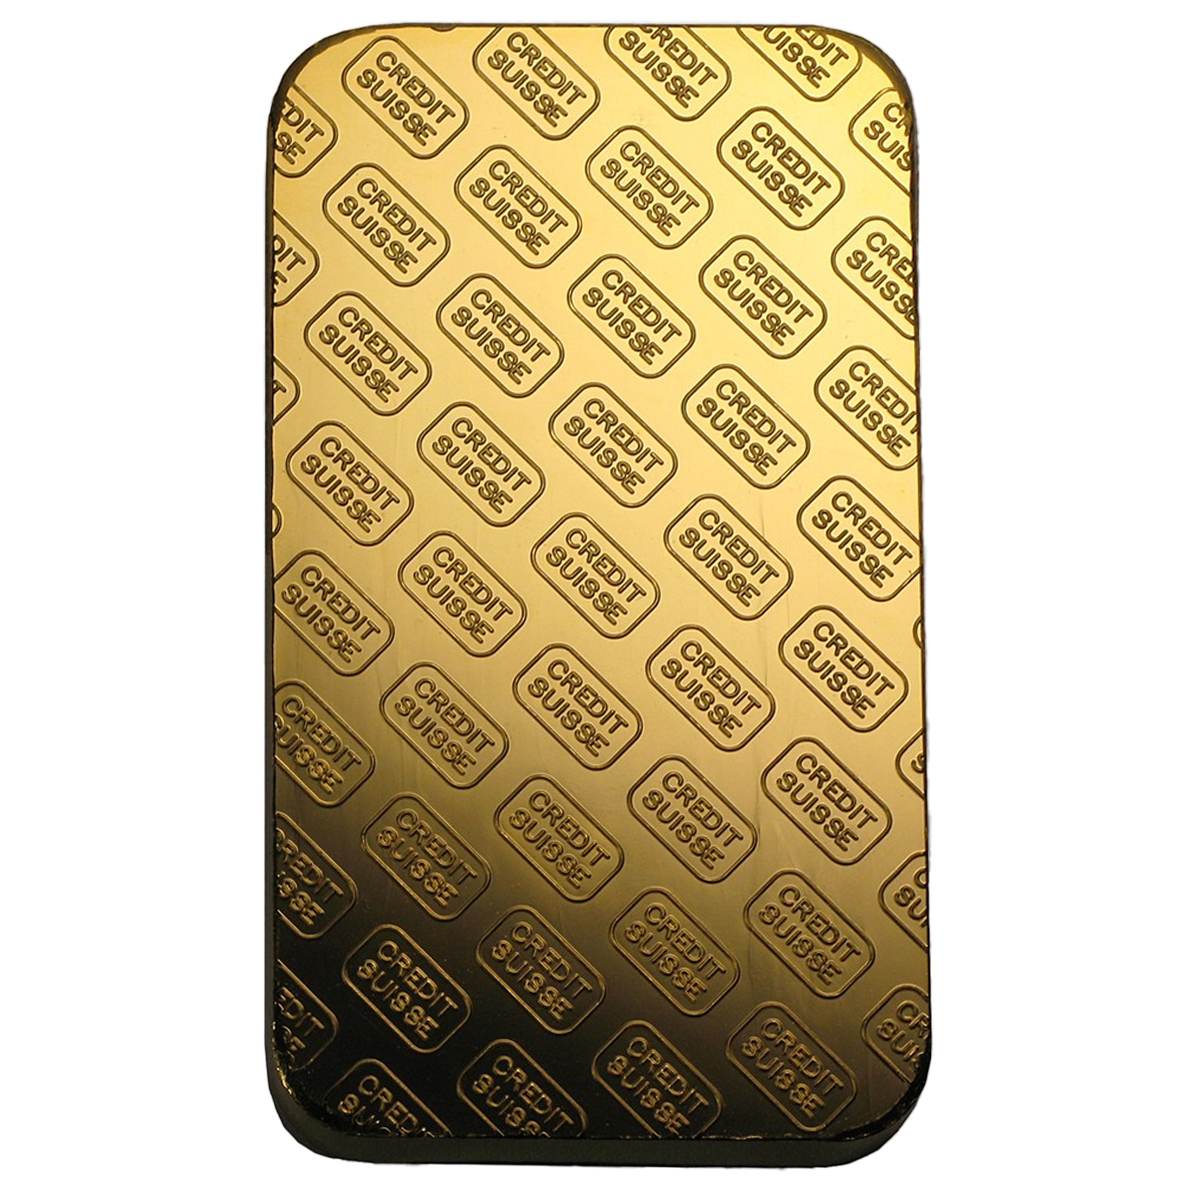 100 grams Gold Bar - Credit Suisse